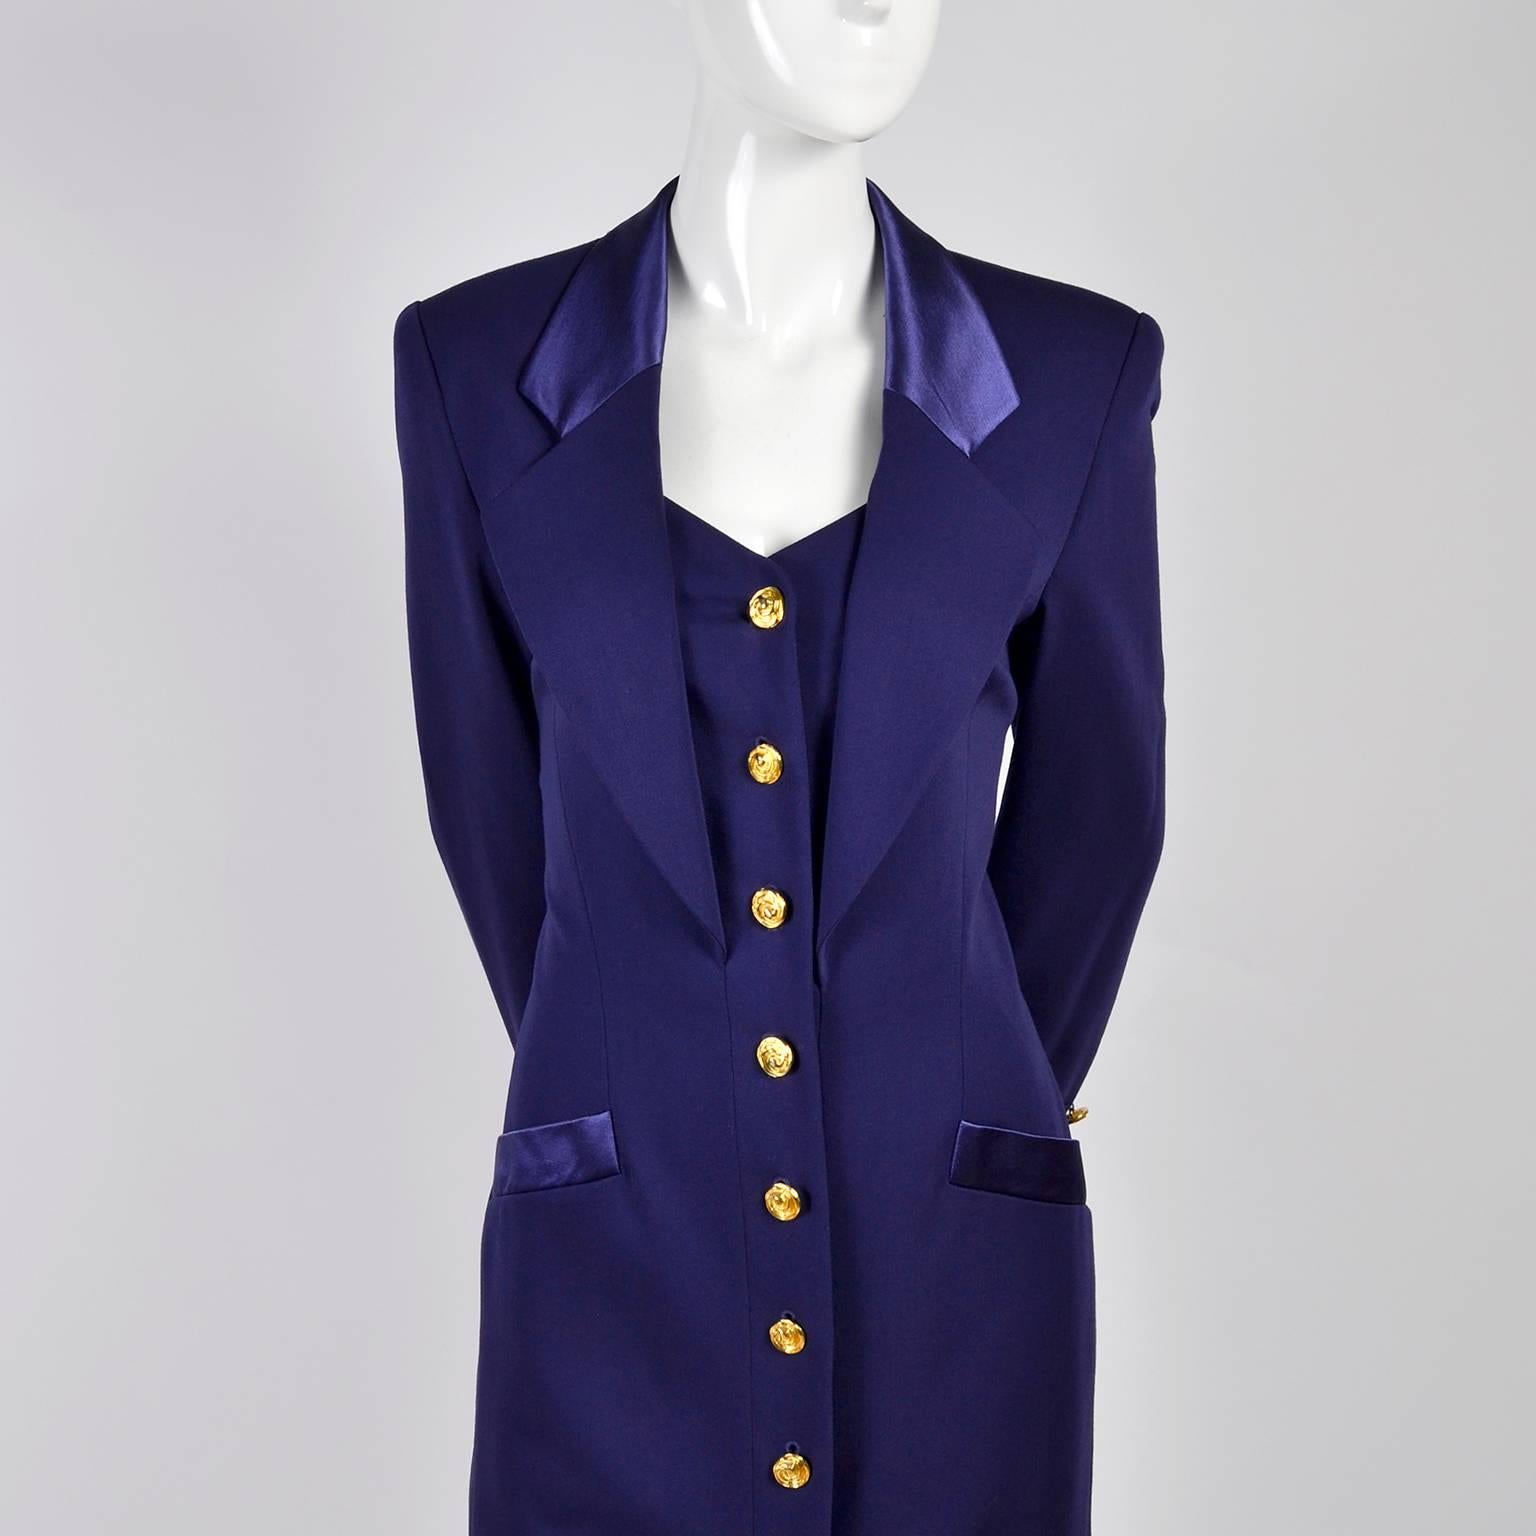 Women's New 1980s Escada Vintage Dress in Tuxedo Style Purple Wool W/ Satin Trim w Tags